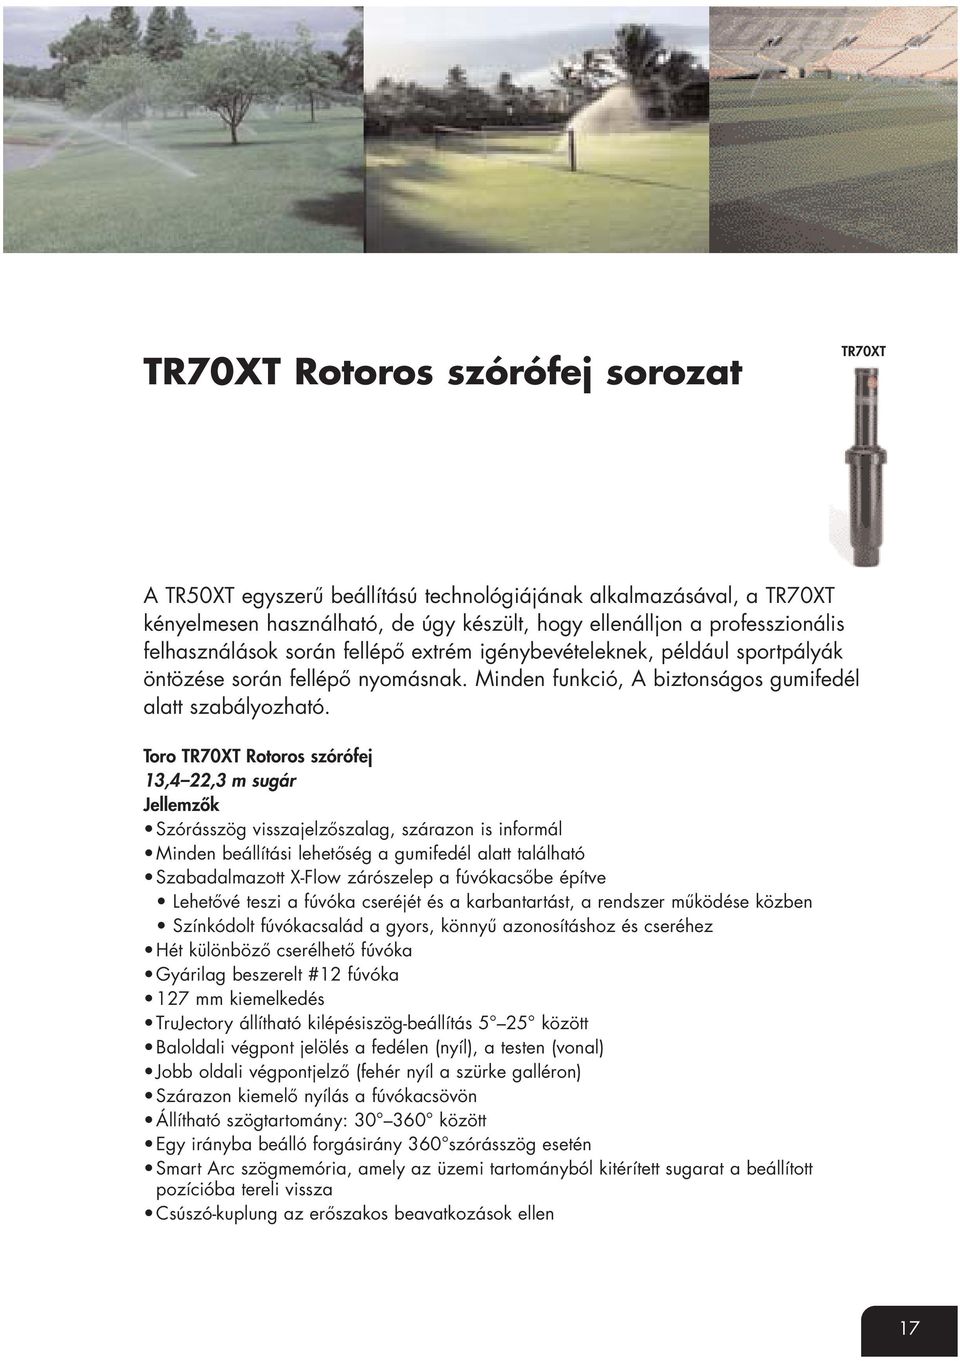 Toro TR70XT Rotoros szórófej 13,4 22,3 m sugár Jellemzők Szórásszög visszajelzőszalag, szárazon is informál Minden beállítási lehetőség a gumifedél alatt található Szabadalmazott X-Flow zárószelep a